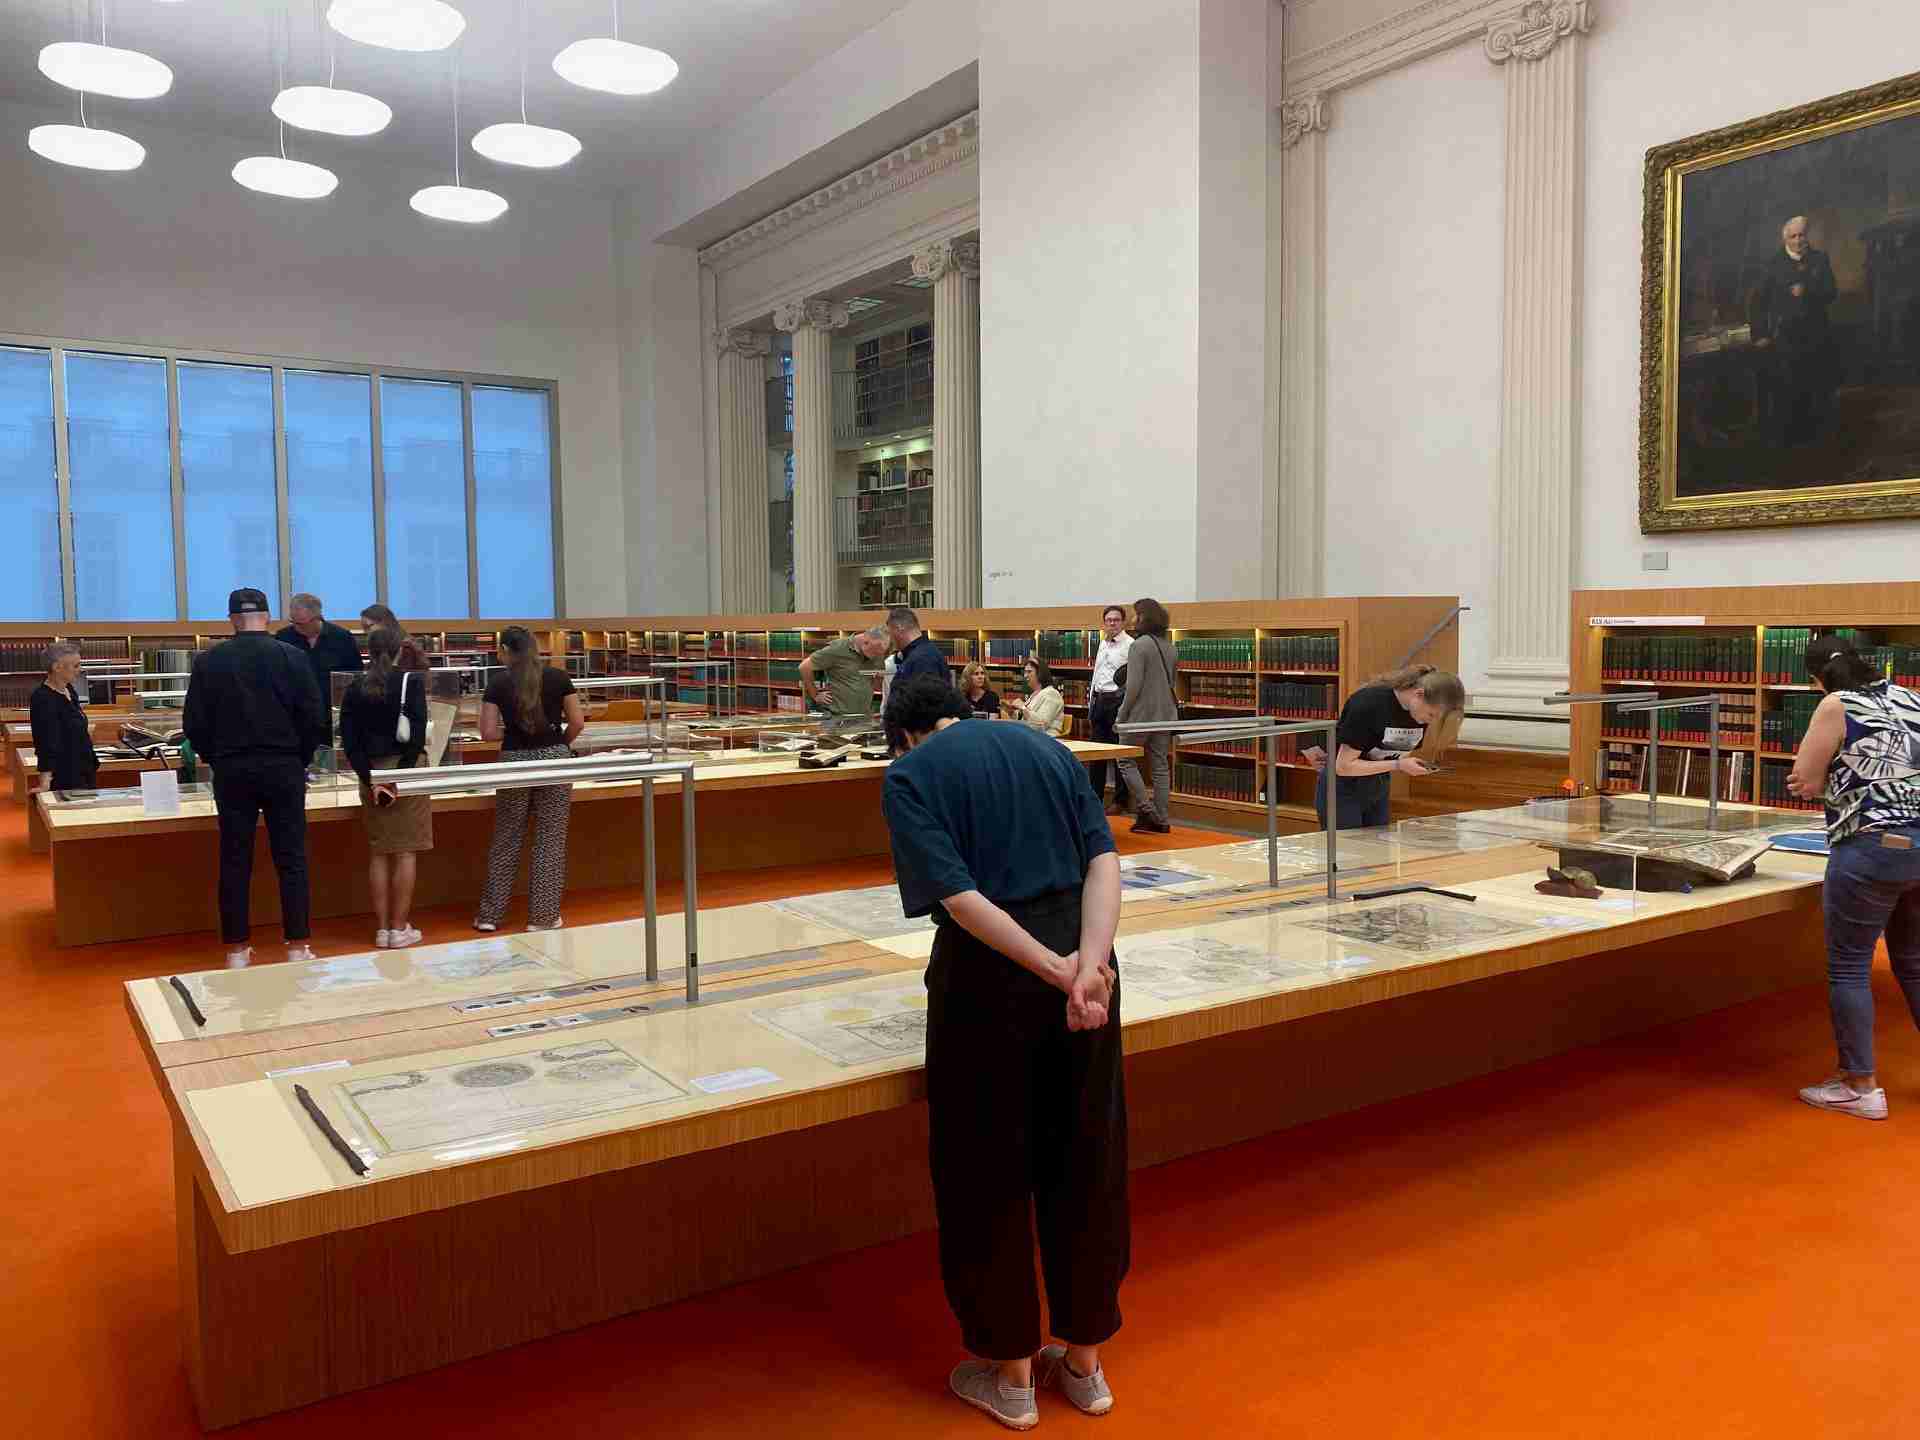 Blick in einen großen Bibliothekssaal mit Büchern und Exponaten